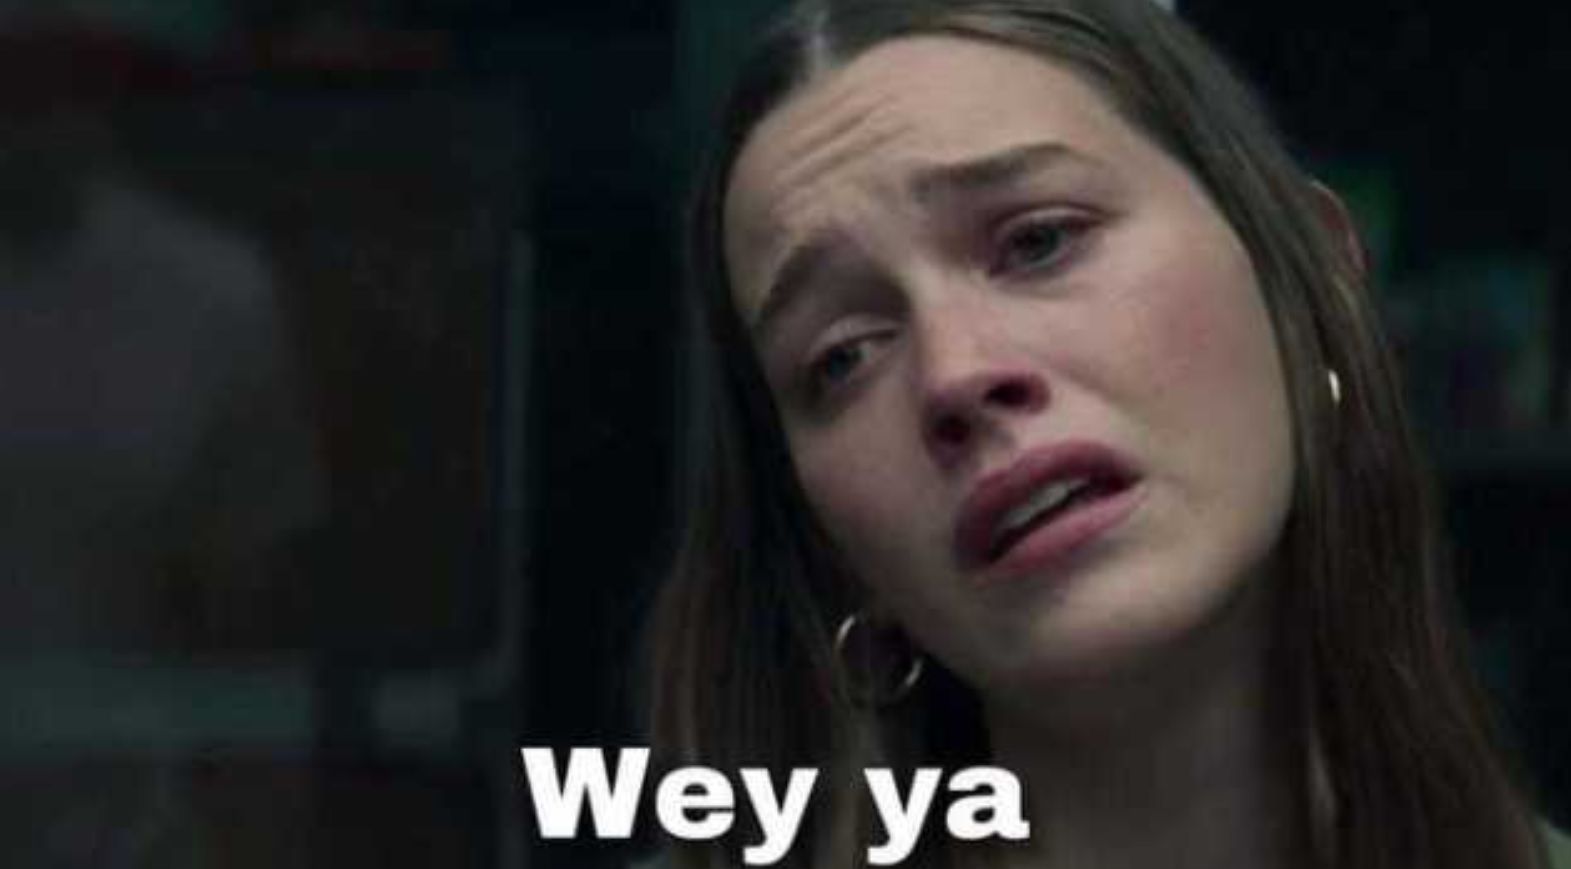 El ya característico humor de los mexicanos ha catapultado al estrellato a un nuevo meme: “Wey ya”. (Foto: redes sociales)